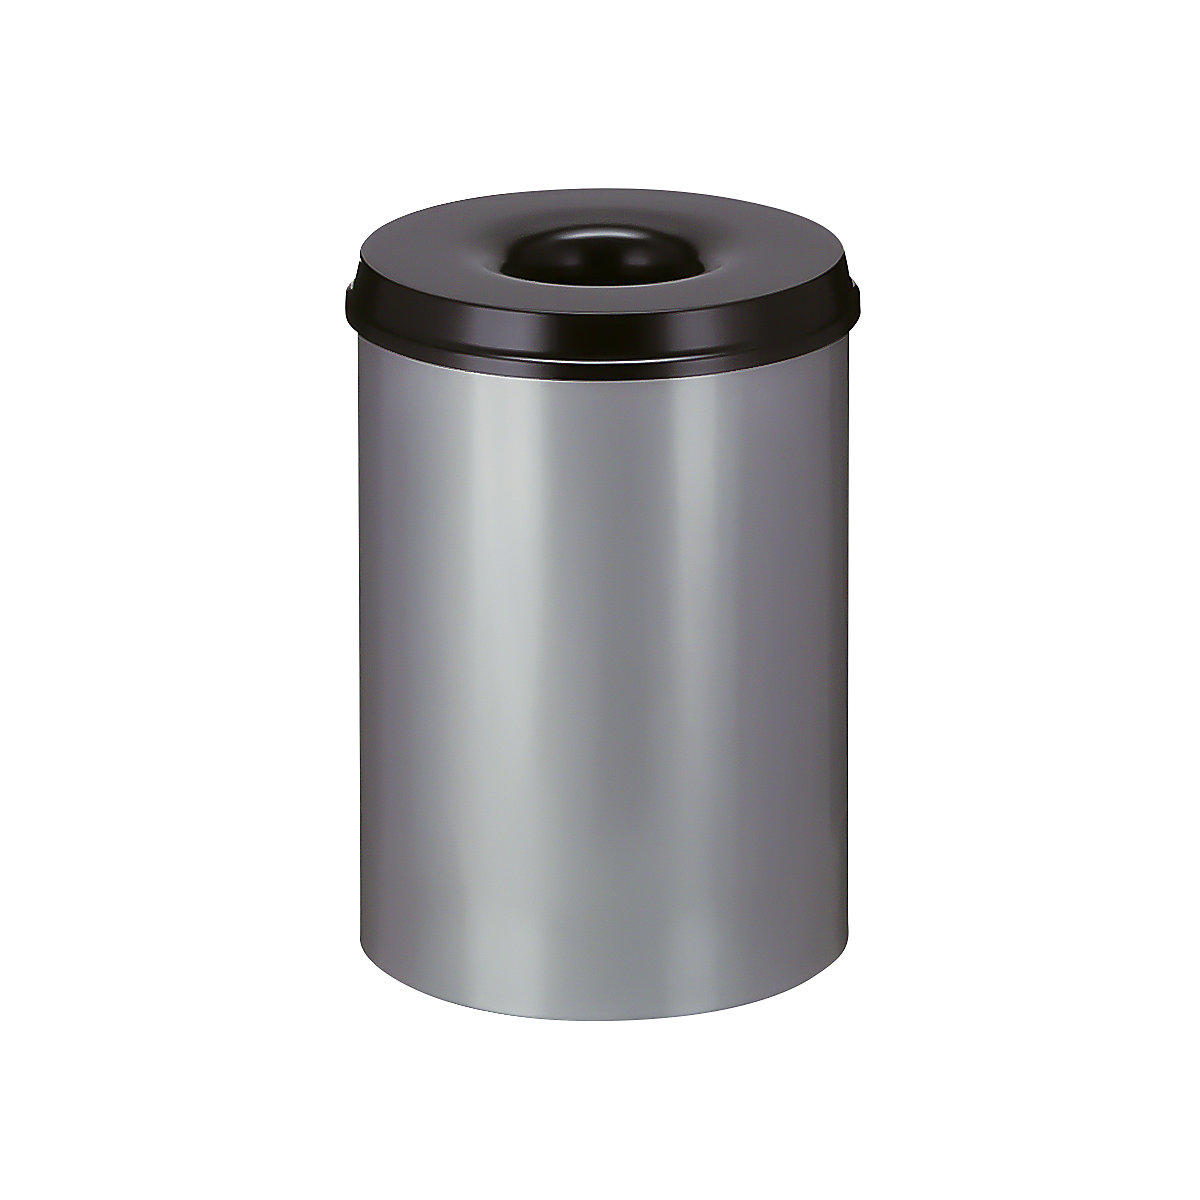 Sicherheits-Papierkorb, Stahl, selbstlöschend, Volumen 30 l, HxØ 470 x 335 mm, Korpus grau / Löschkopf schwarz-7